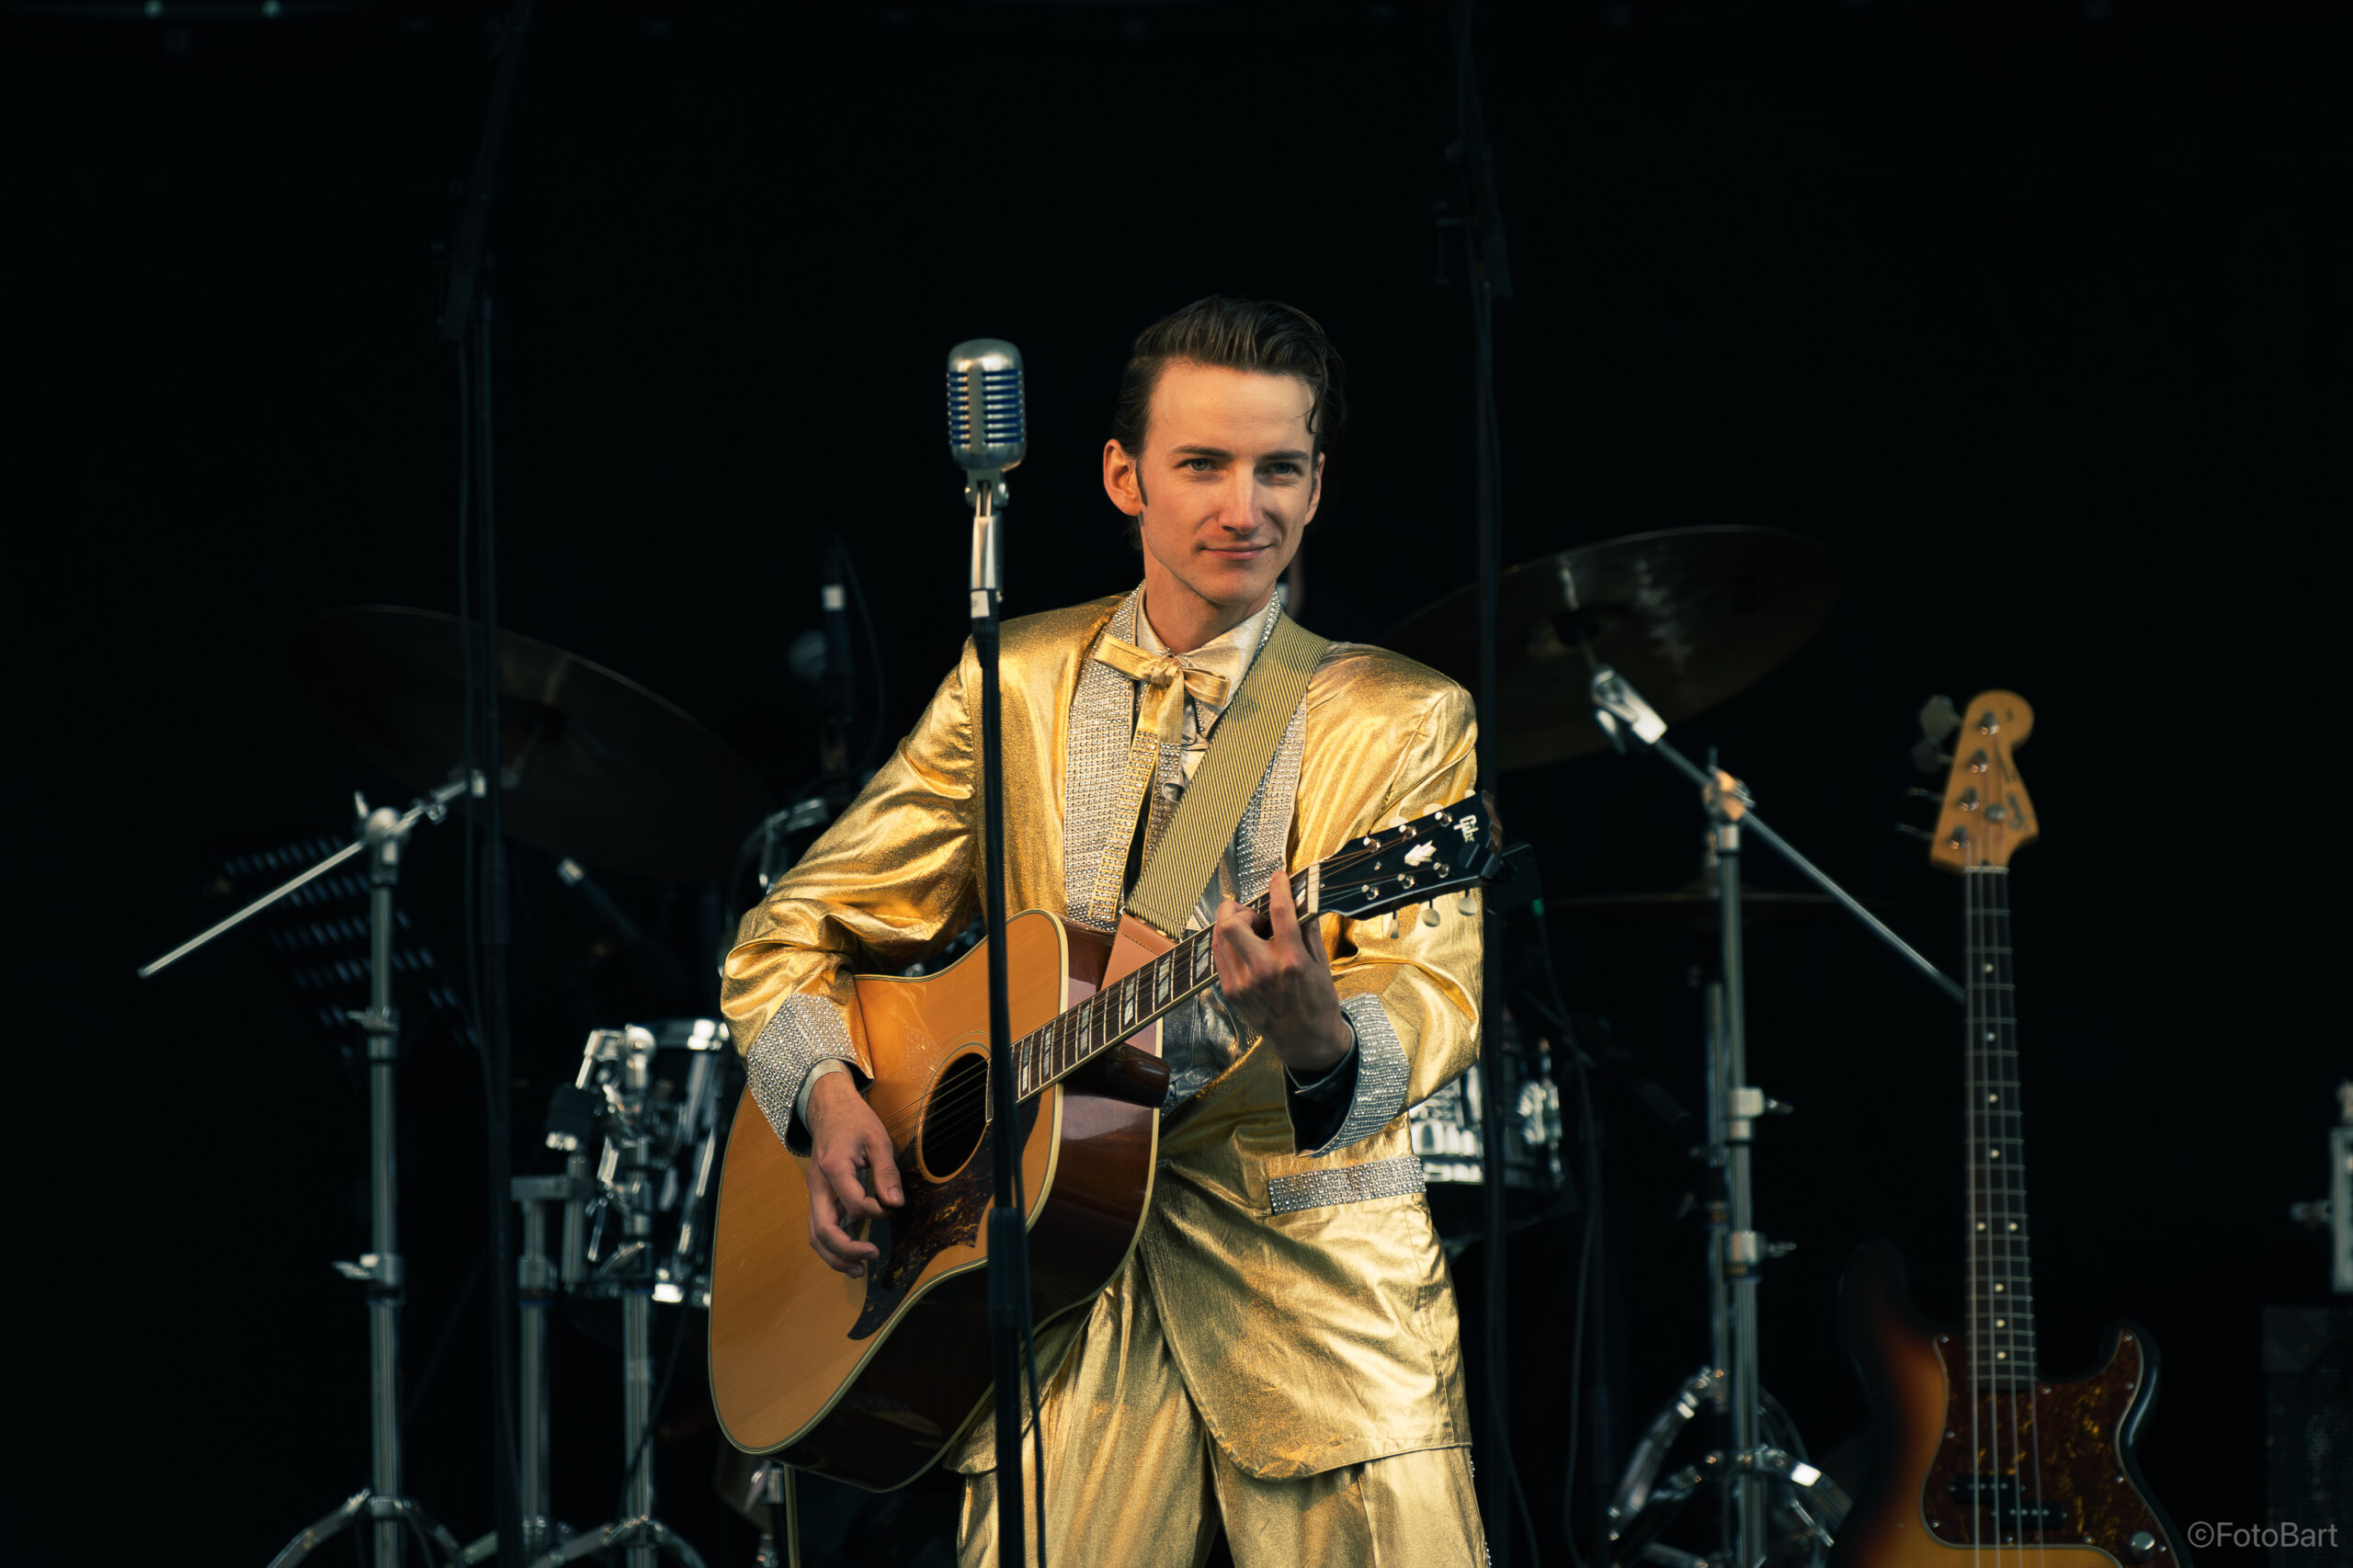 Lill-Elvis, Pär Holmberg från Avesta på scenen med akustisk gitarr och guldkostym